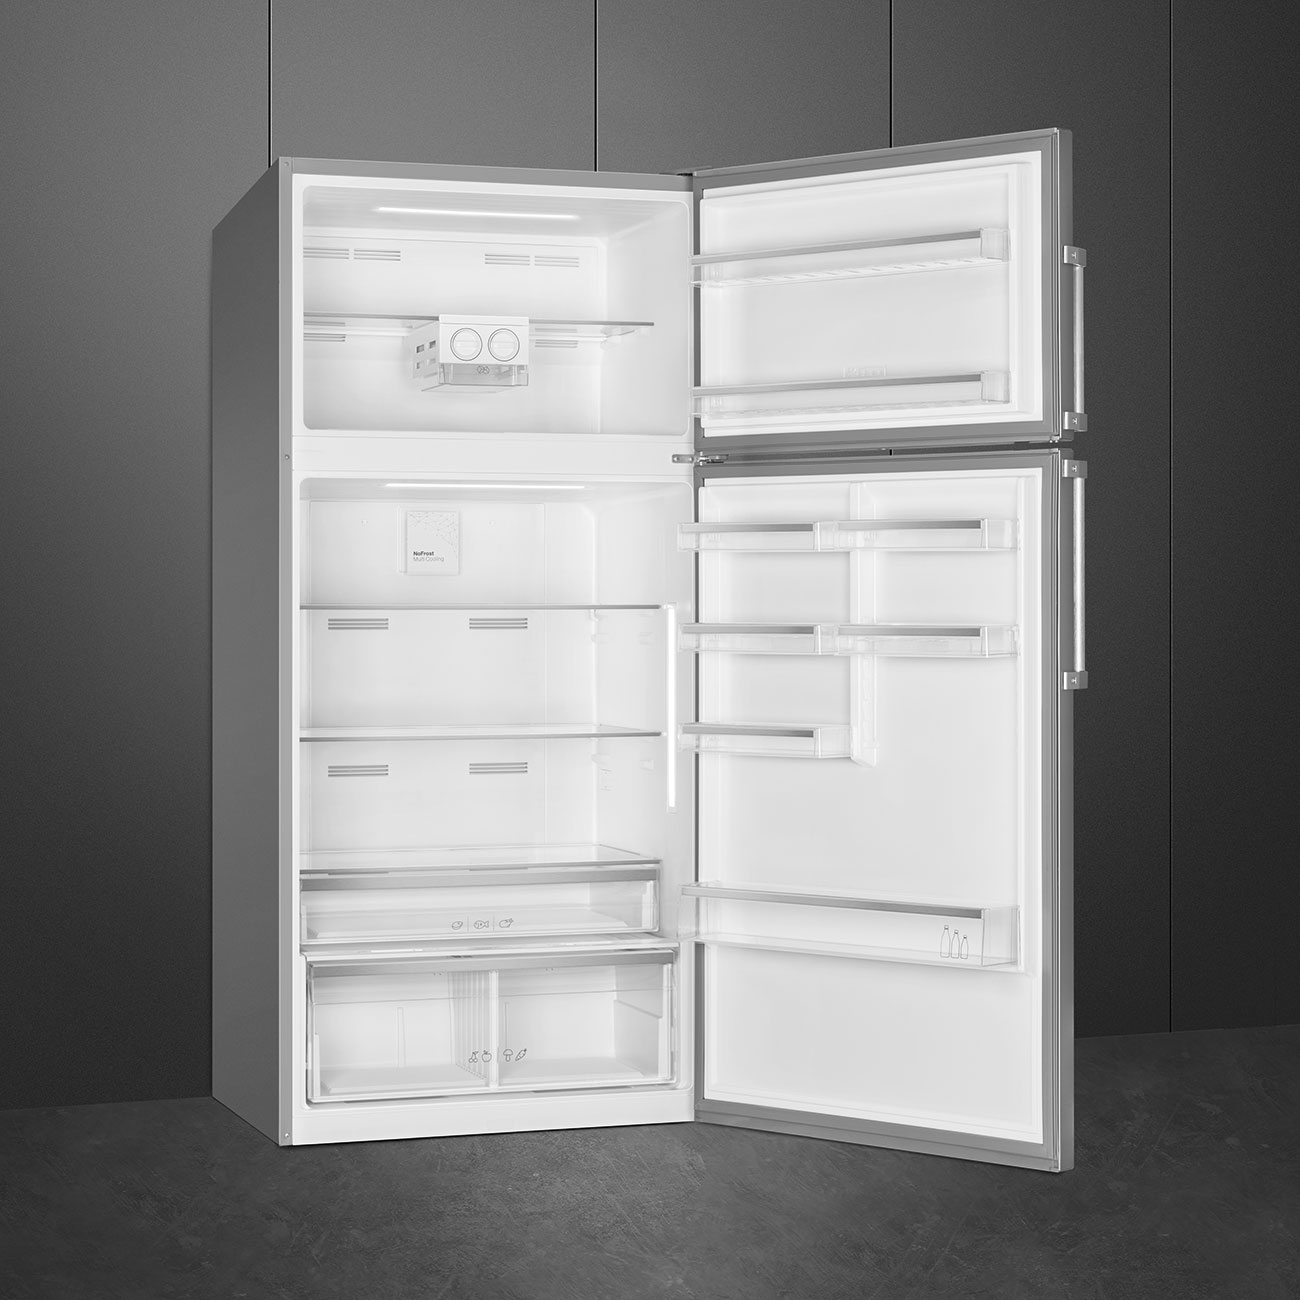 Double Door Free standing refrigerator - Smeg_4